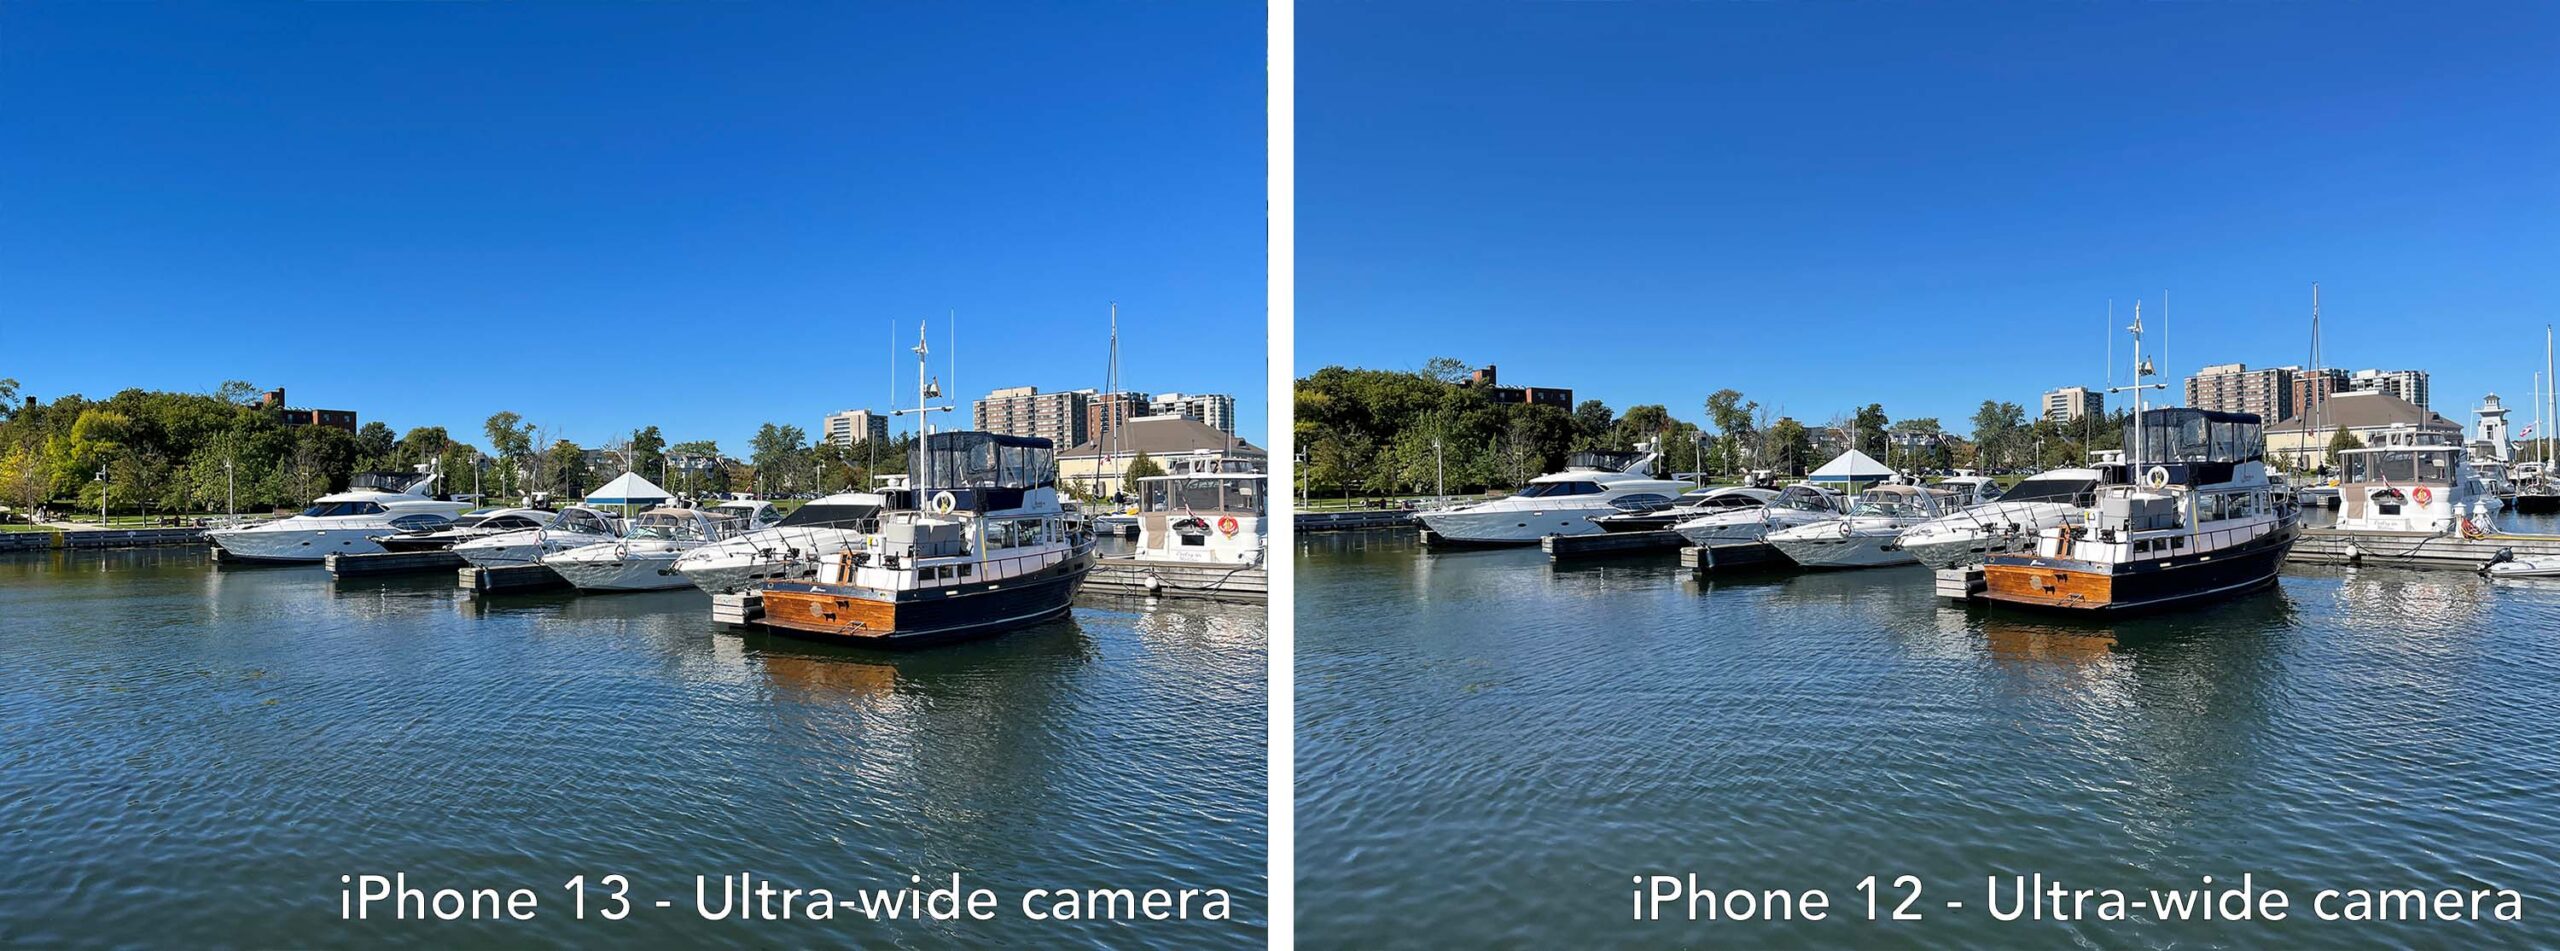 iPhone 13 vs iPhone 12 ultra-wide 